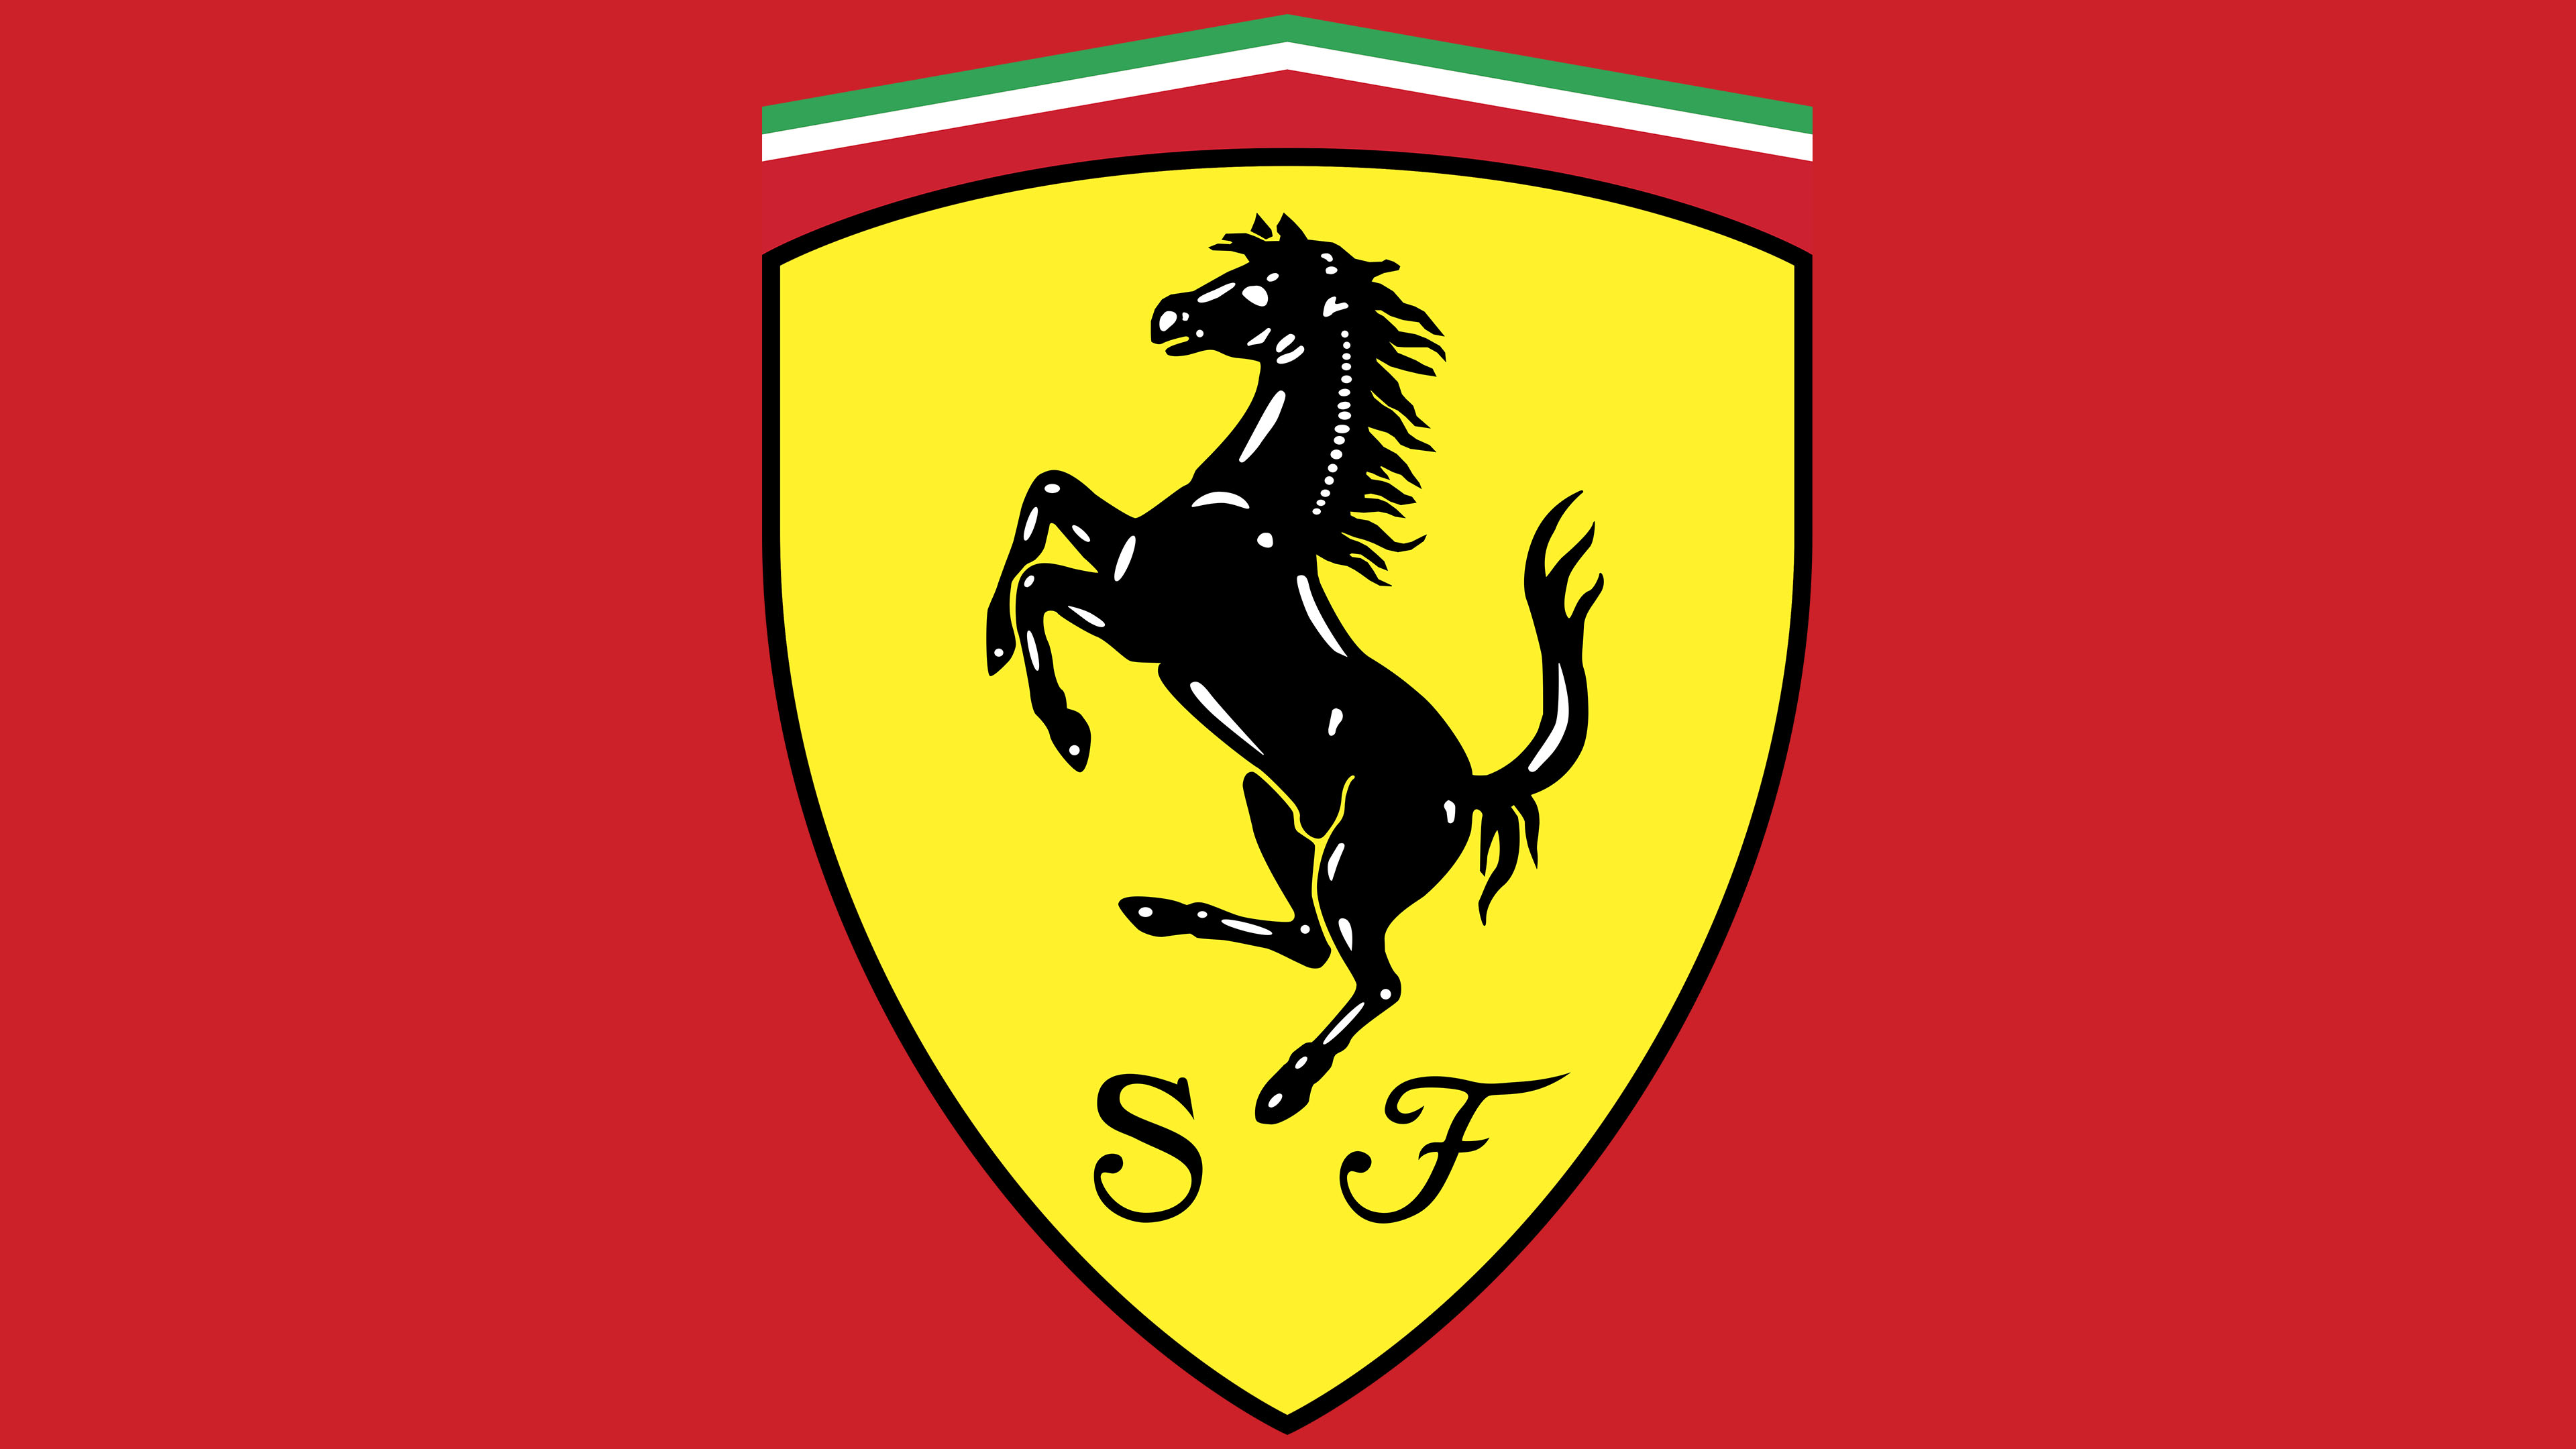 Desenho De Um Cavalo Da Marca Ferrari